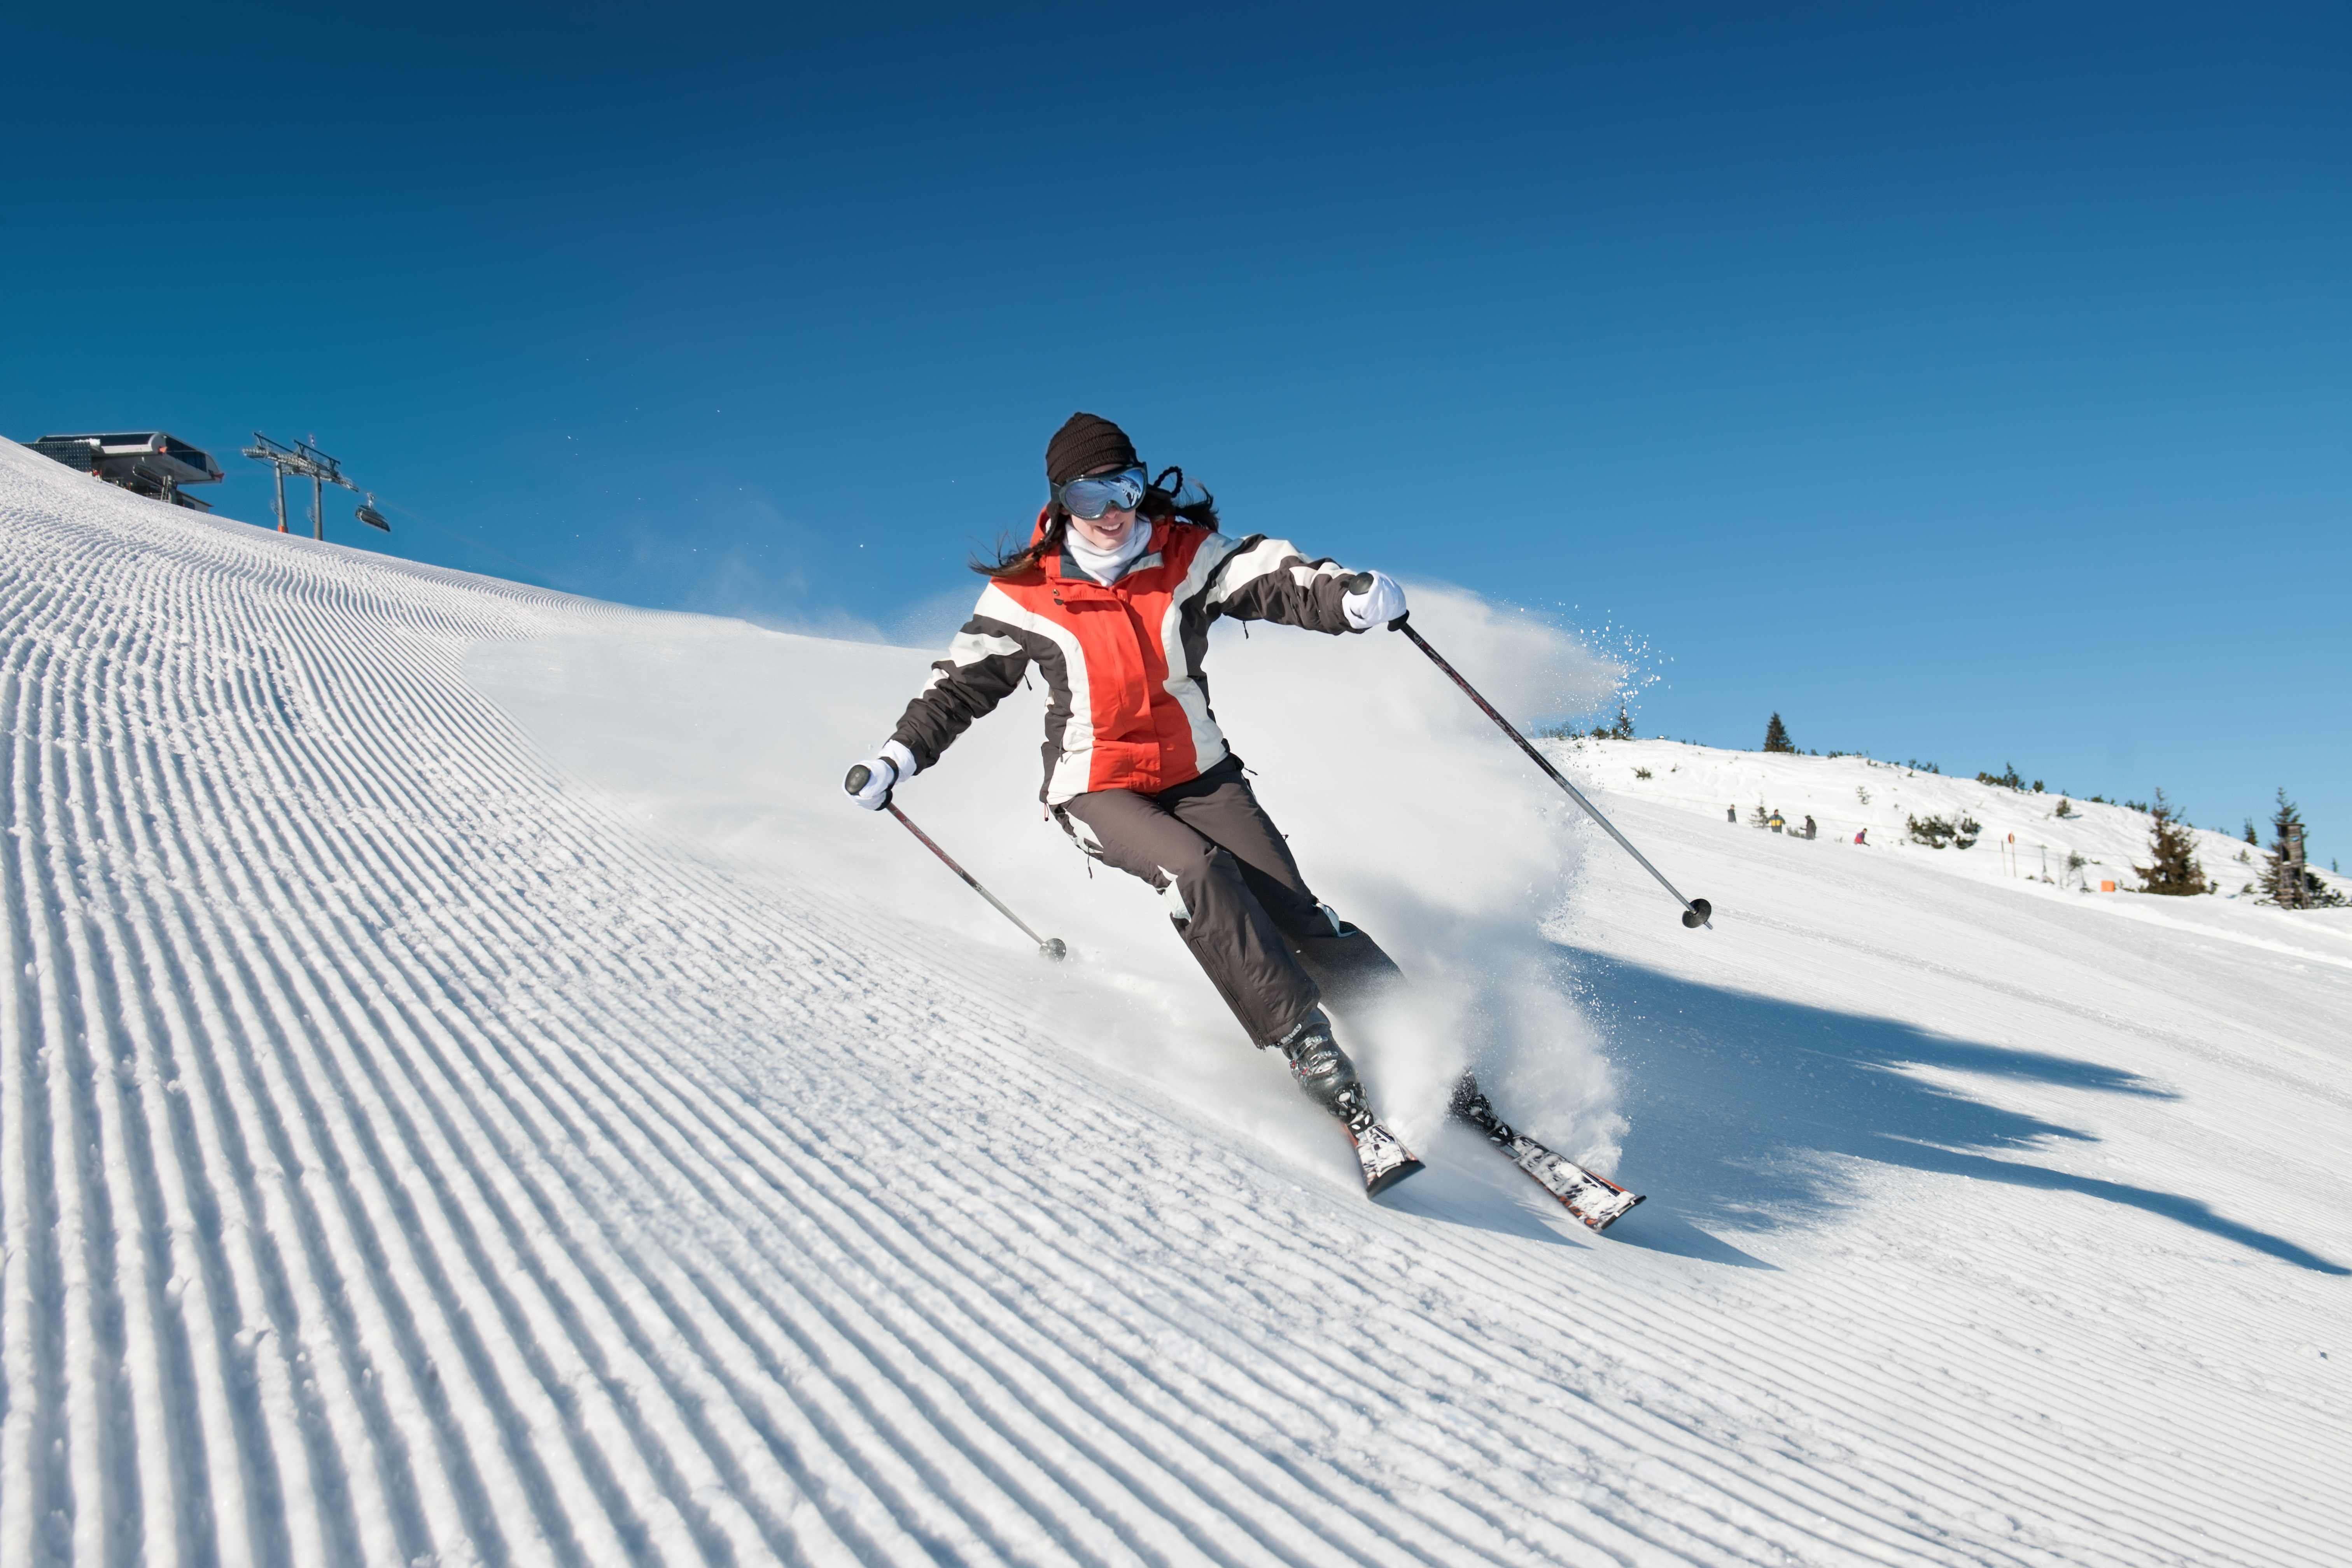 Great skiing. Лыжи. Стоковая фотография горнолыжный спорт. Горные лыжи видео. Леди на лыжах.